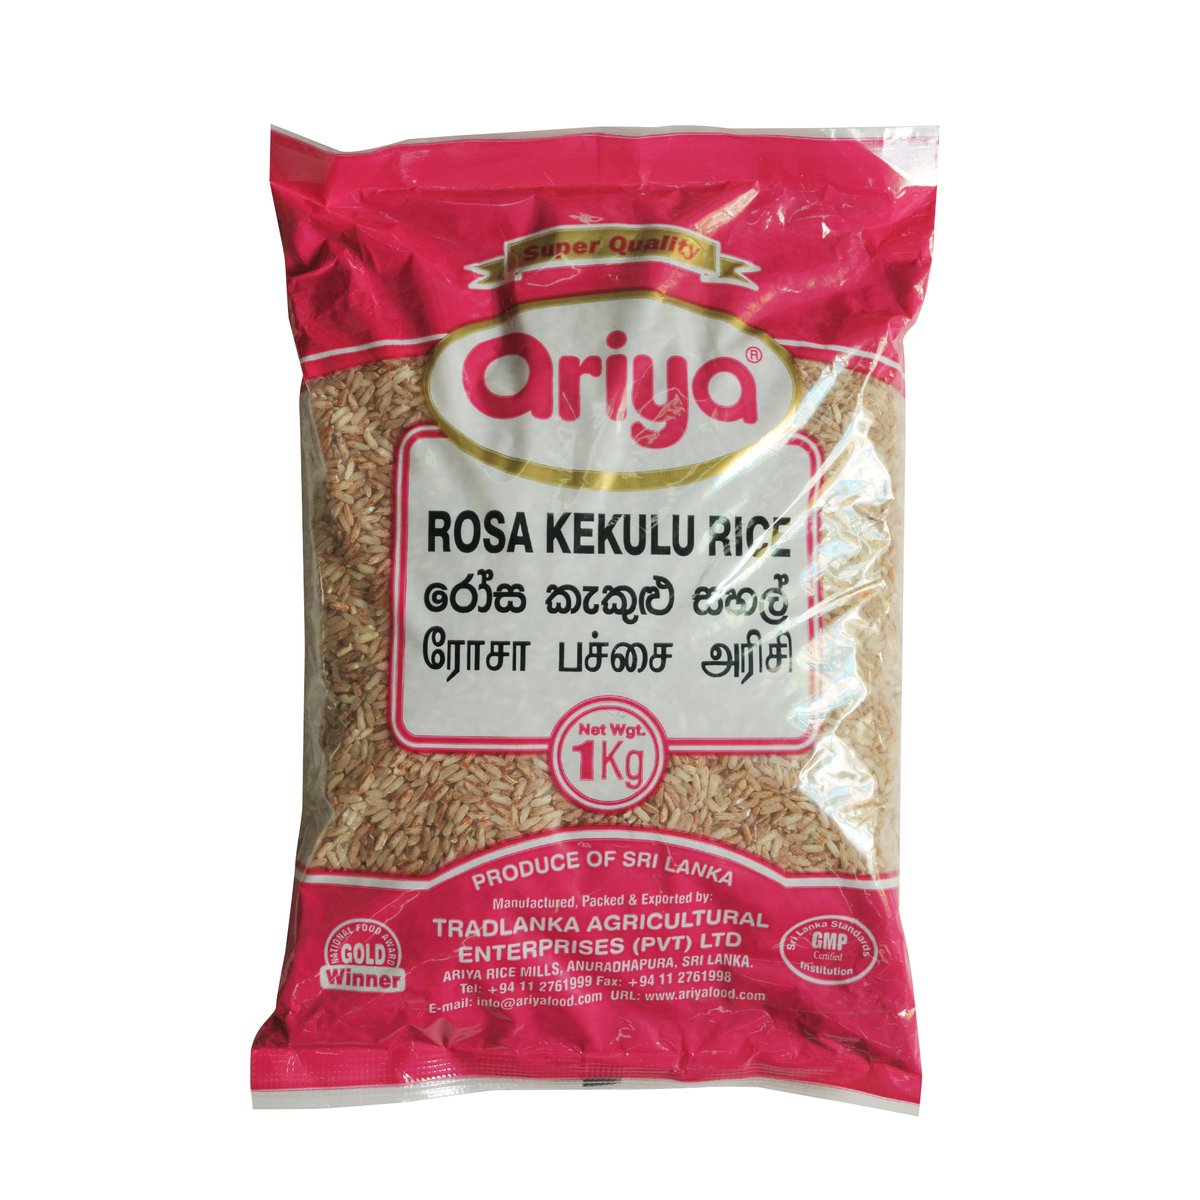 Ariya Rosa Kekulu Rice 1kg